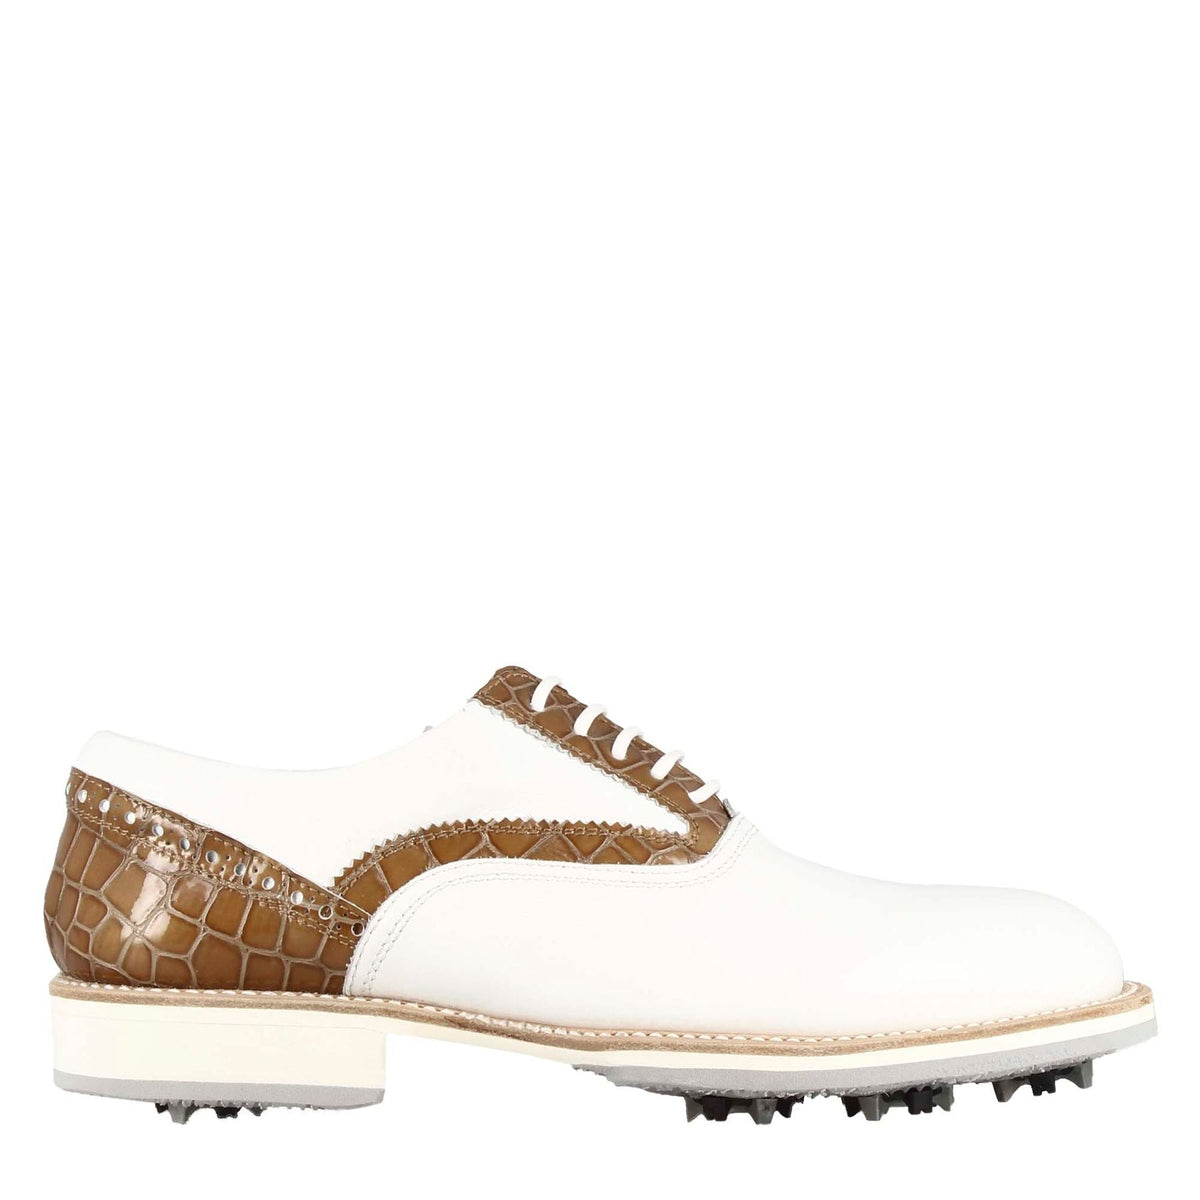 Scarpe da golf artigianali da uomo in pelle bianca con dettagli in colore marrone chiaro.